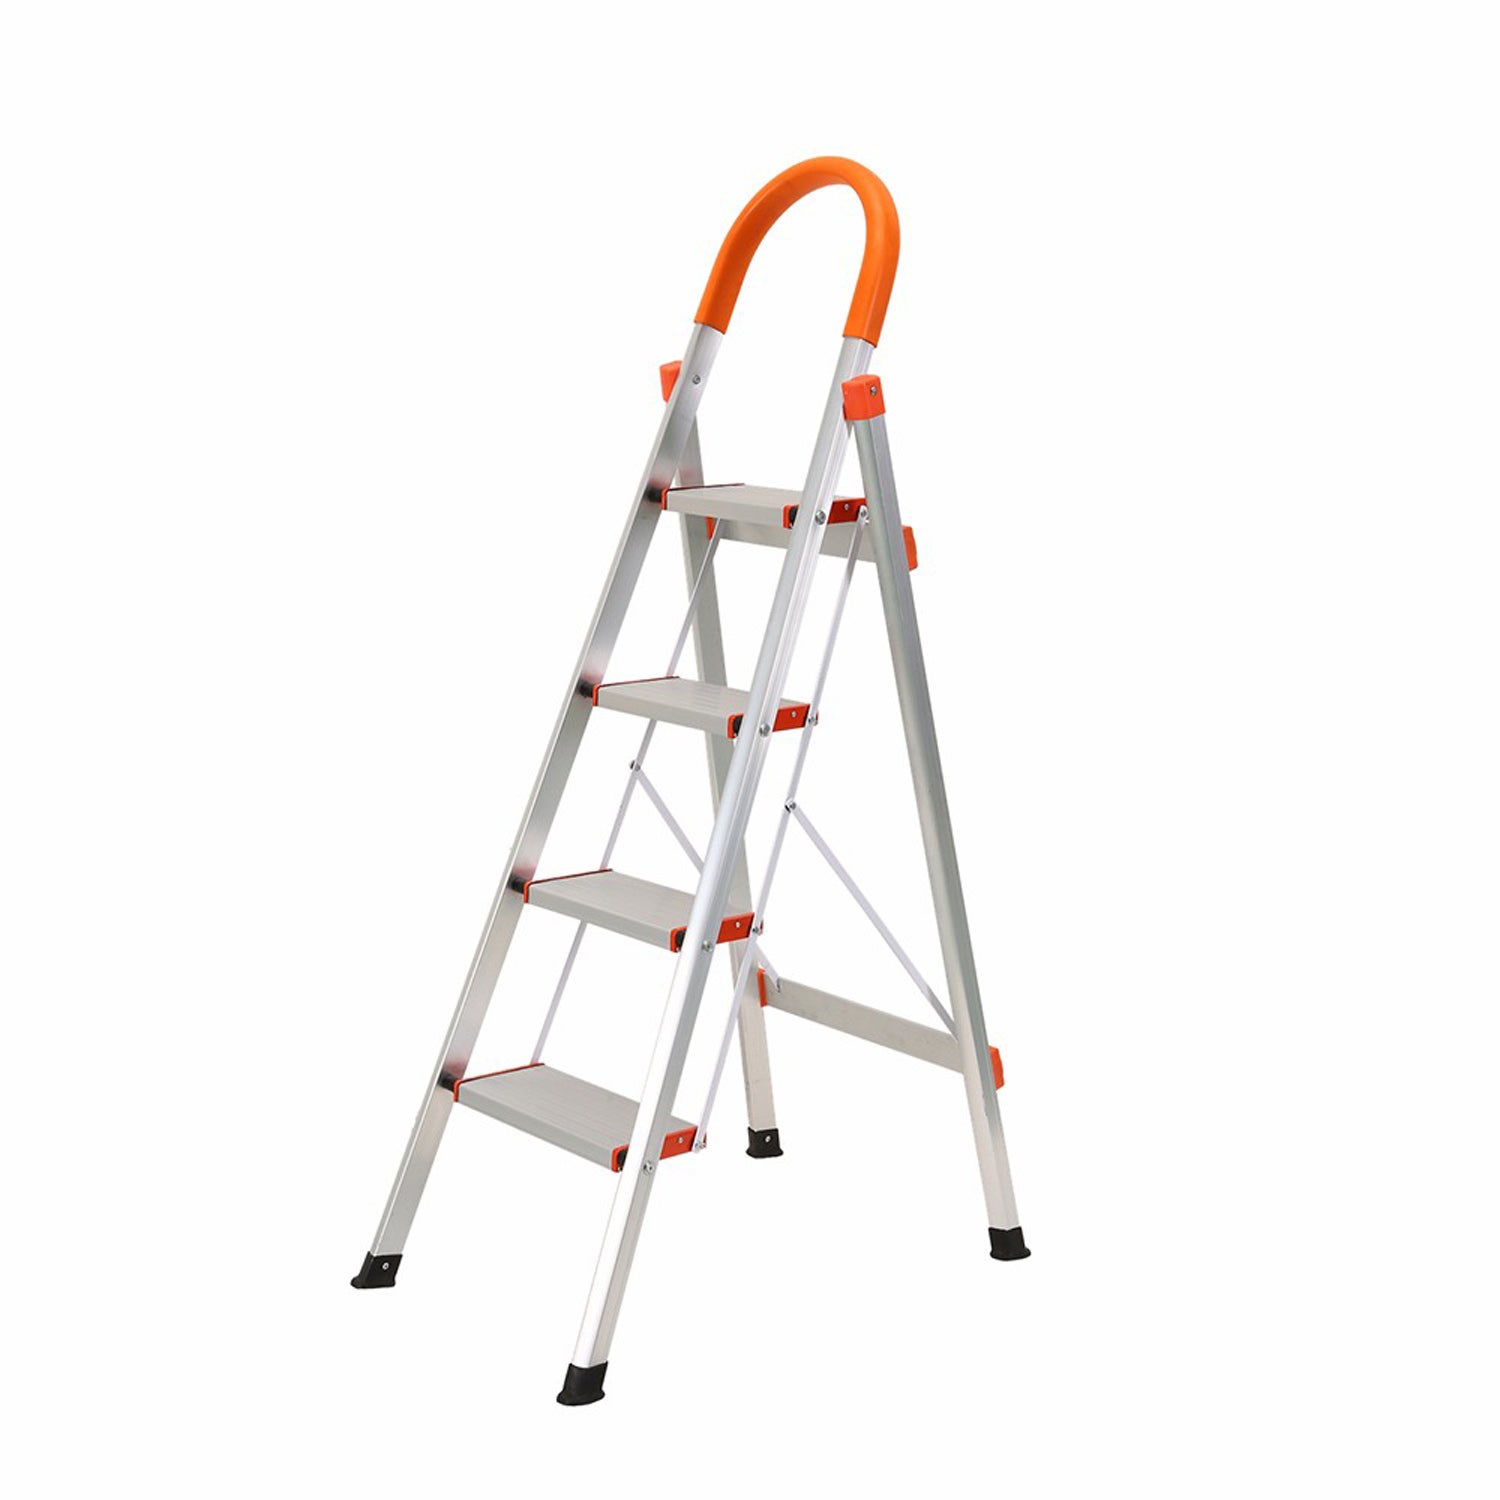 4 Step Ladder Aluminium Multi Purpose For Household Office Foldable Non Slip